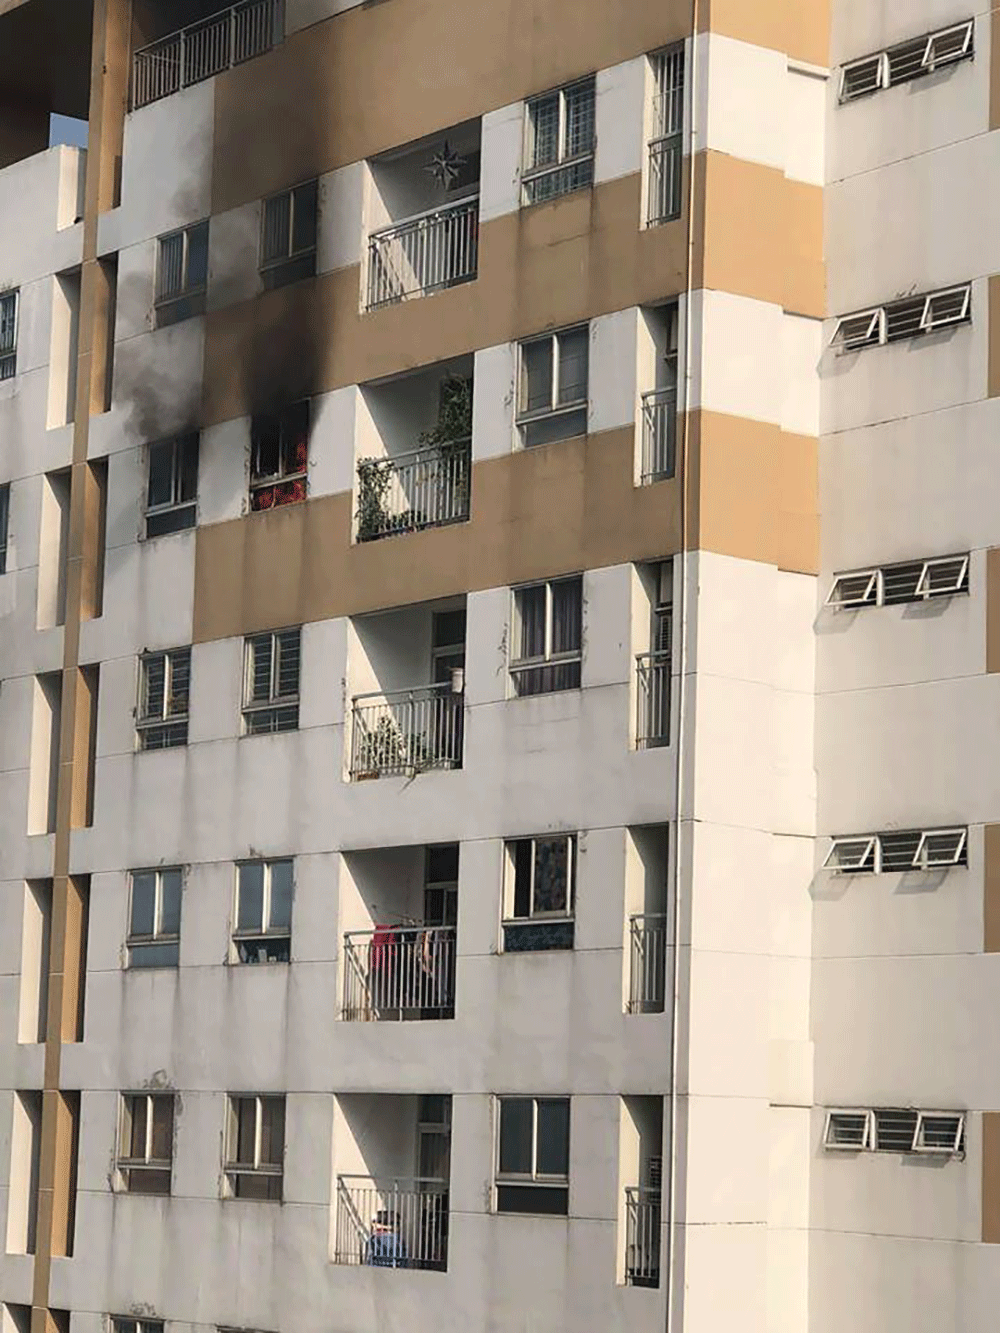 Cháy lớn tại chung cư Hưng Ngân